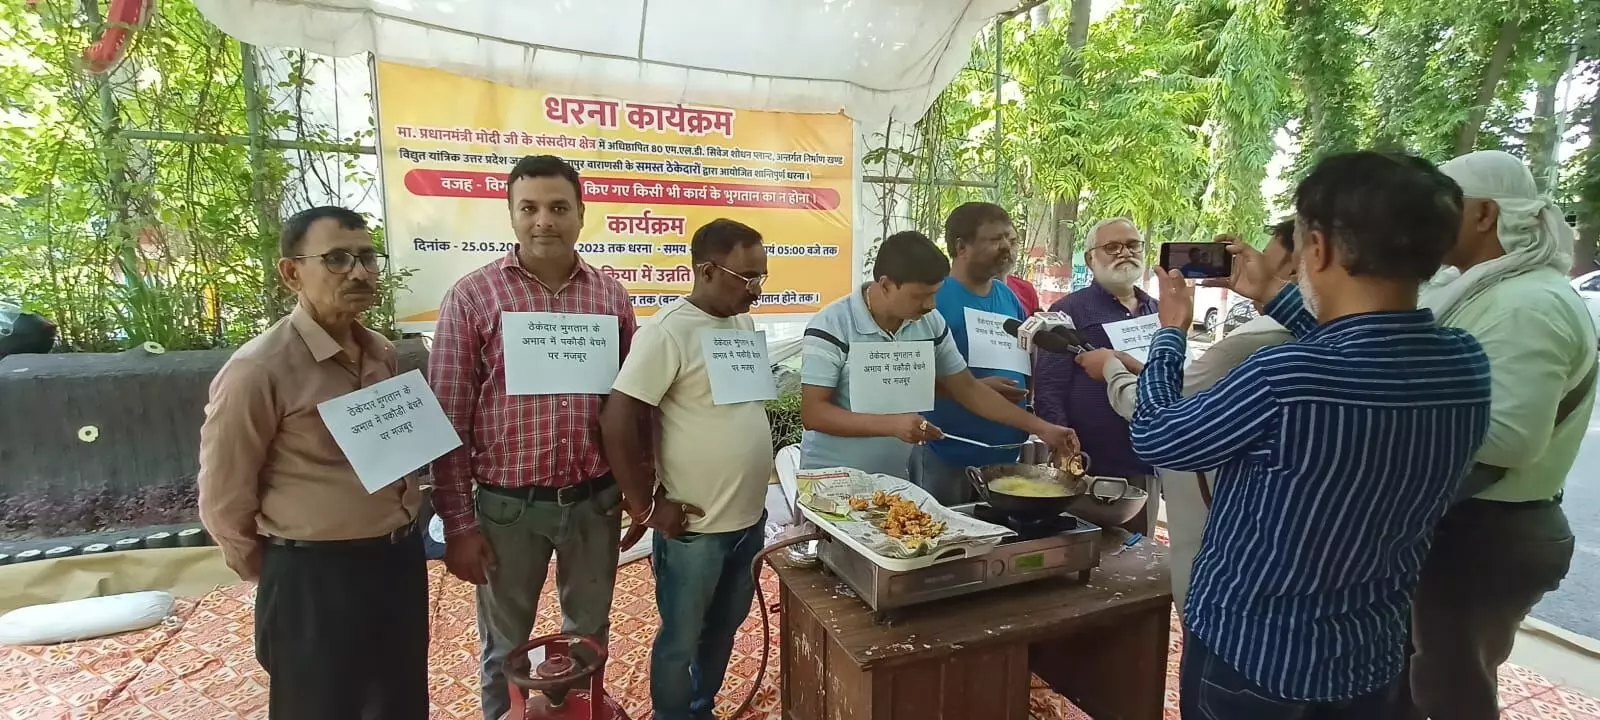 Varanasi : दस माह से नहीं मिला वेतन, नाराज ठेकेदारों ने पकौड़े तल कर जल निगम के खिलाफ किया प्रदर्शन